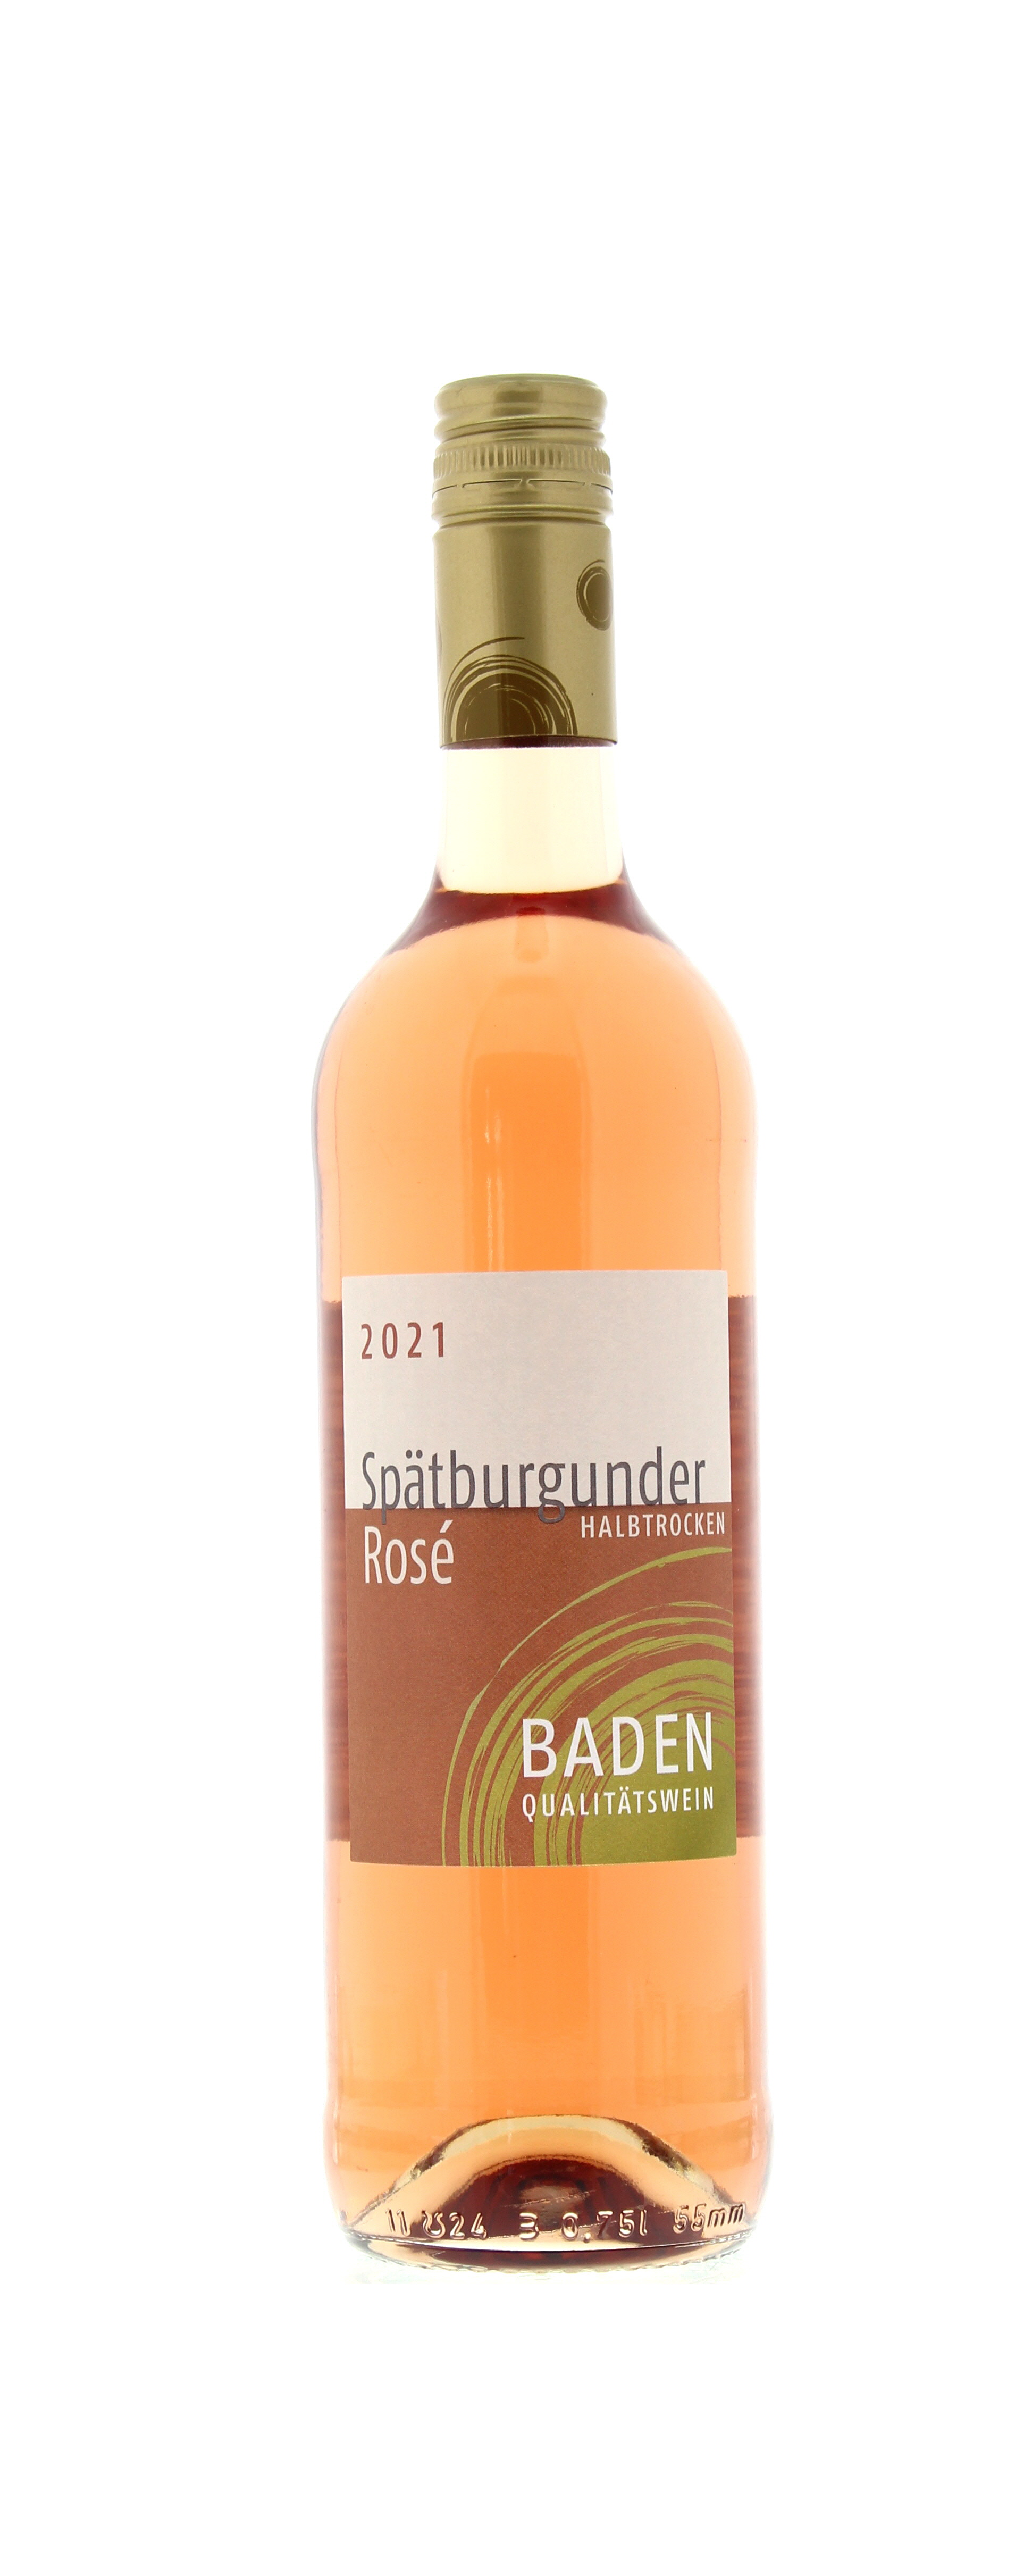 2021 Baden Spätburgunder 0,75 Qualitätswein l - Mobile PENNY Rosé Flasche halbtrocken Wein-App